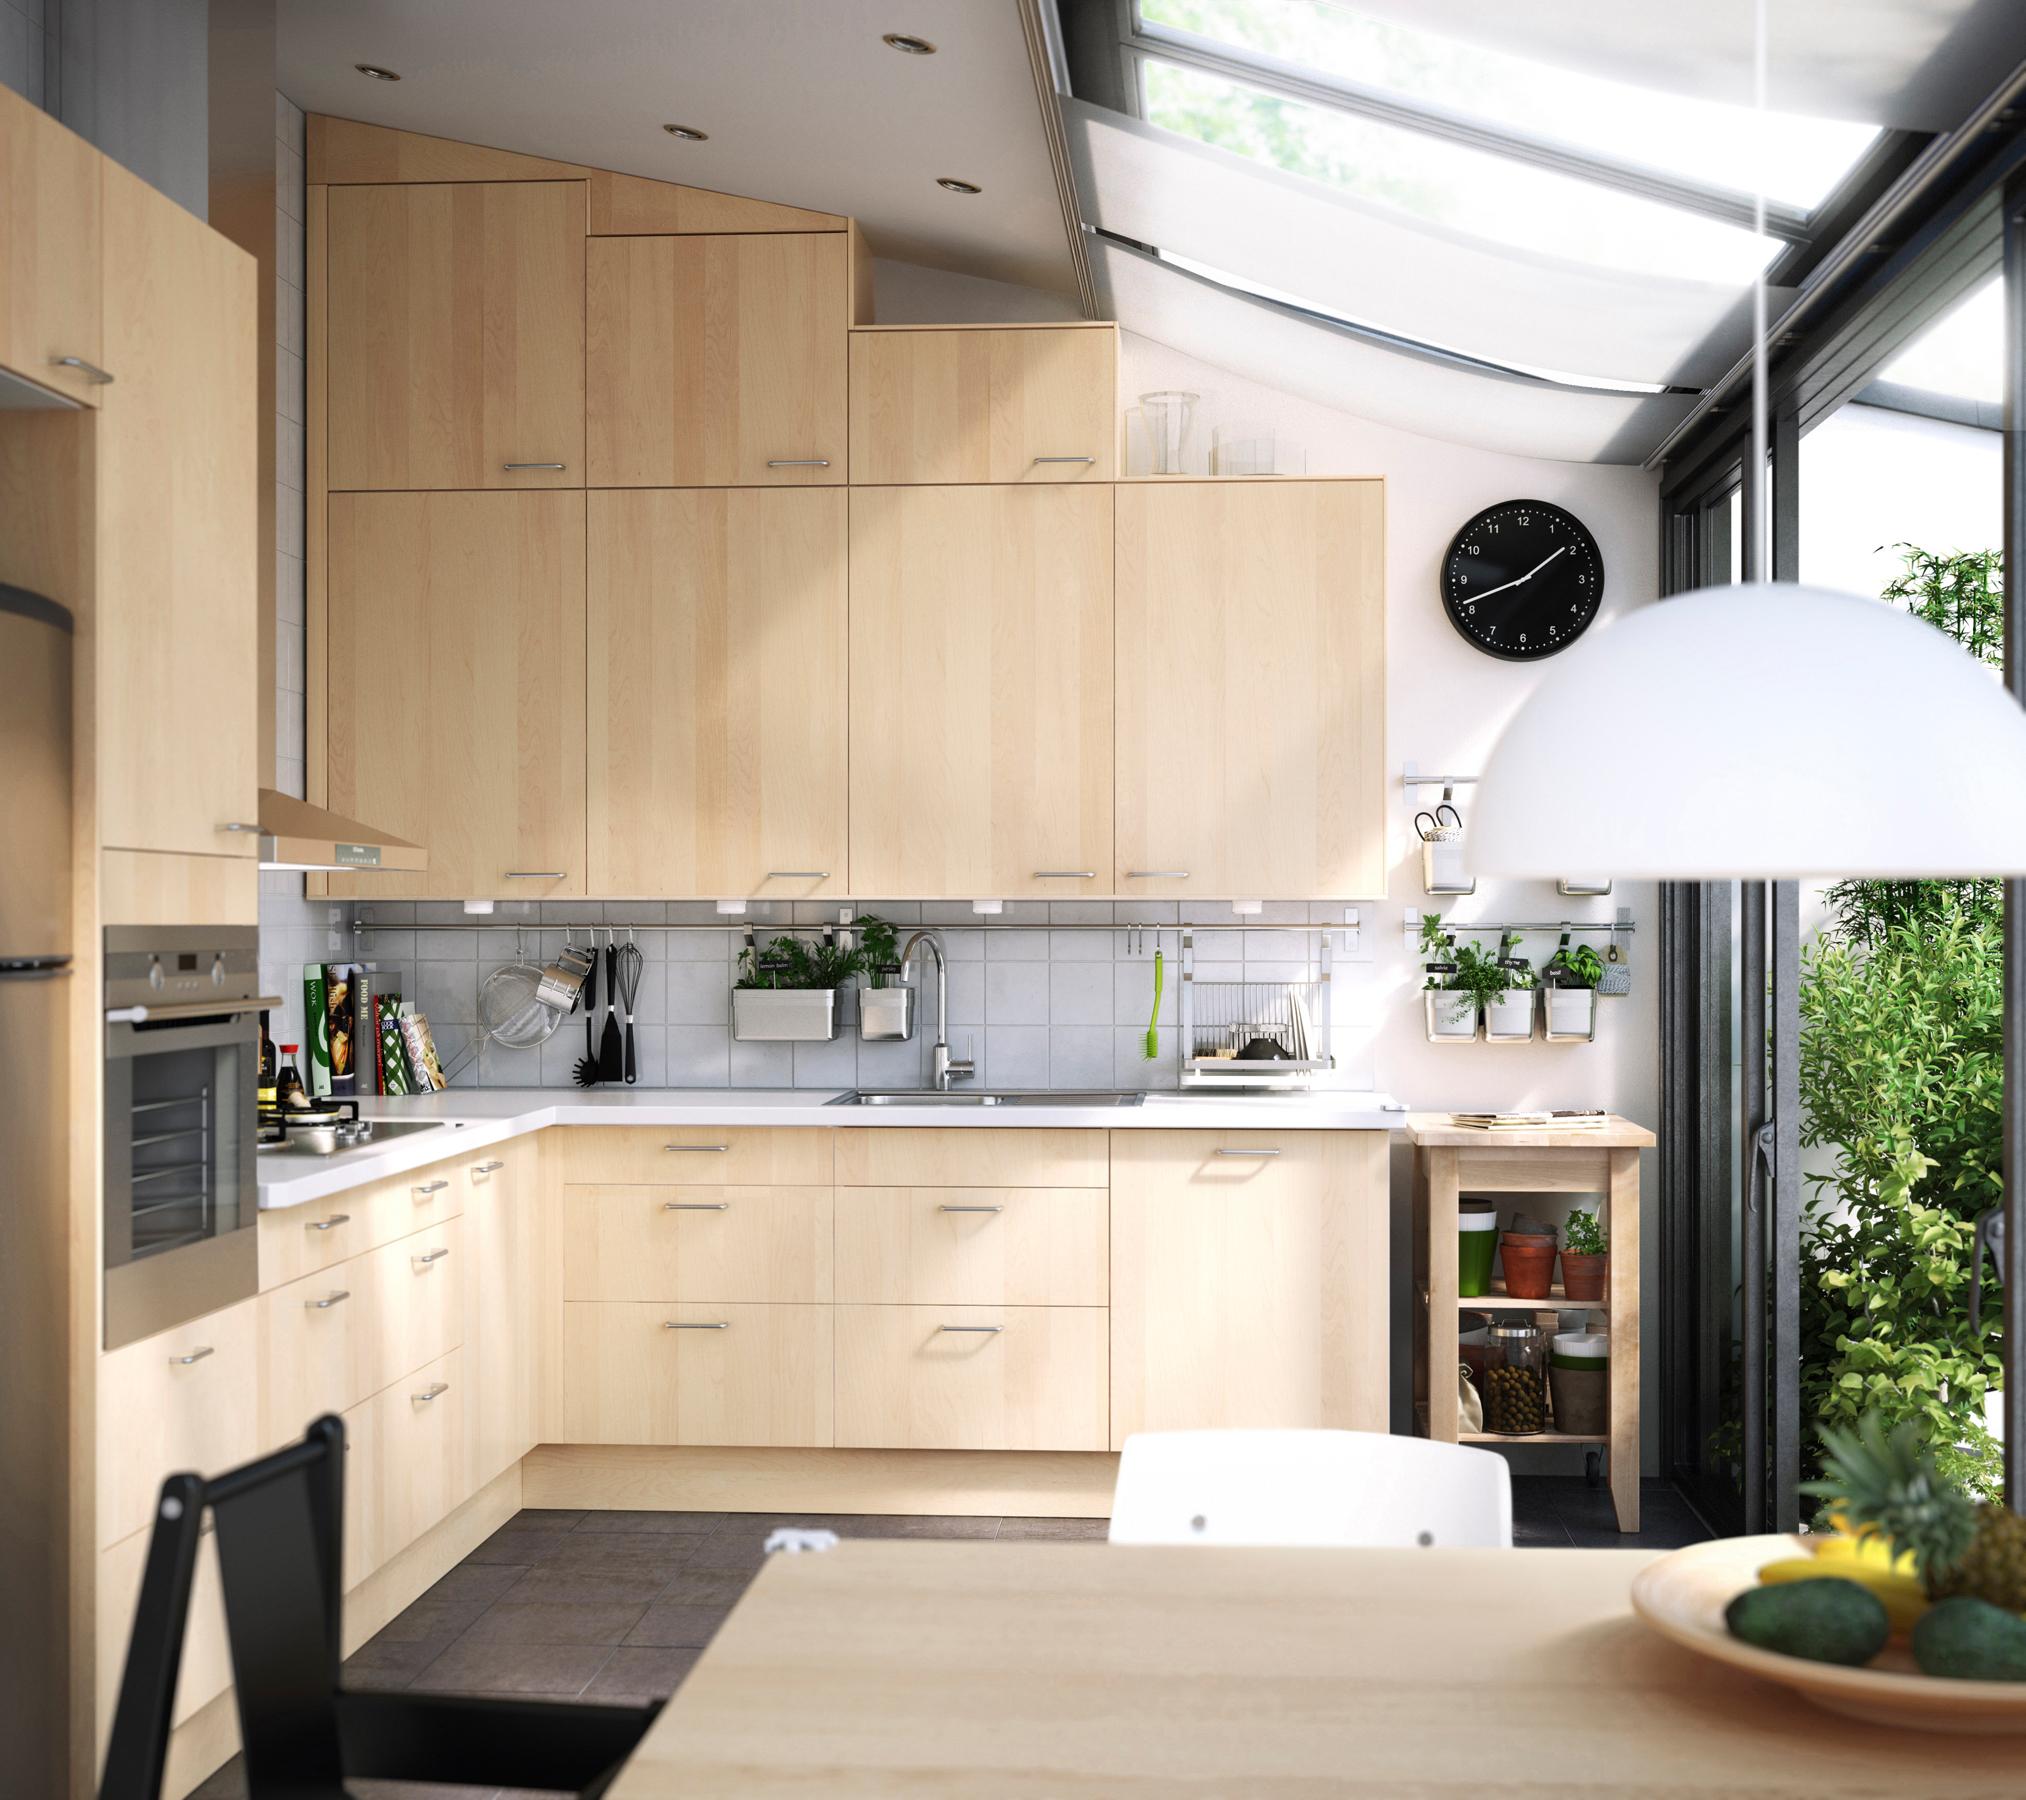 Hängeschränke mit Birkenfurnier in moderner Küche #hängeschrank #ikea #dachschrägenküche ©Inter IKEA Systems B.V